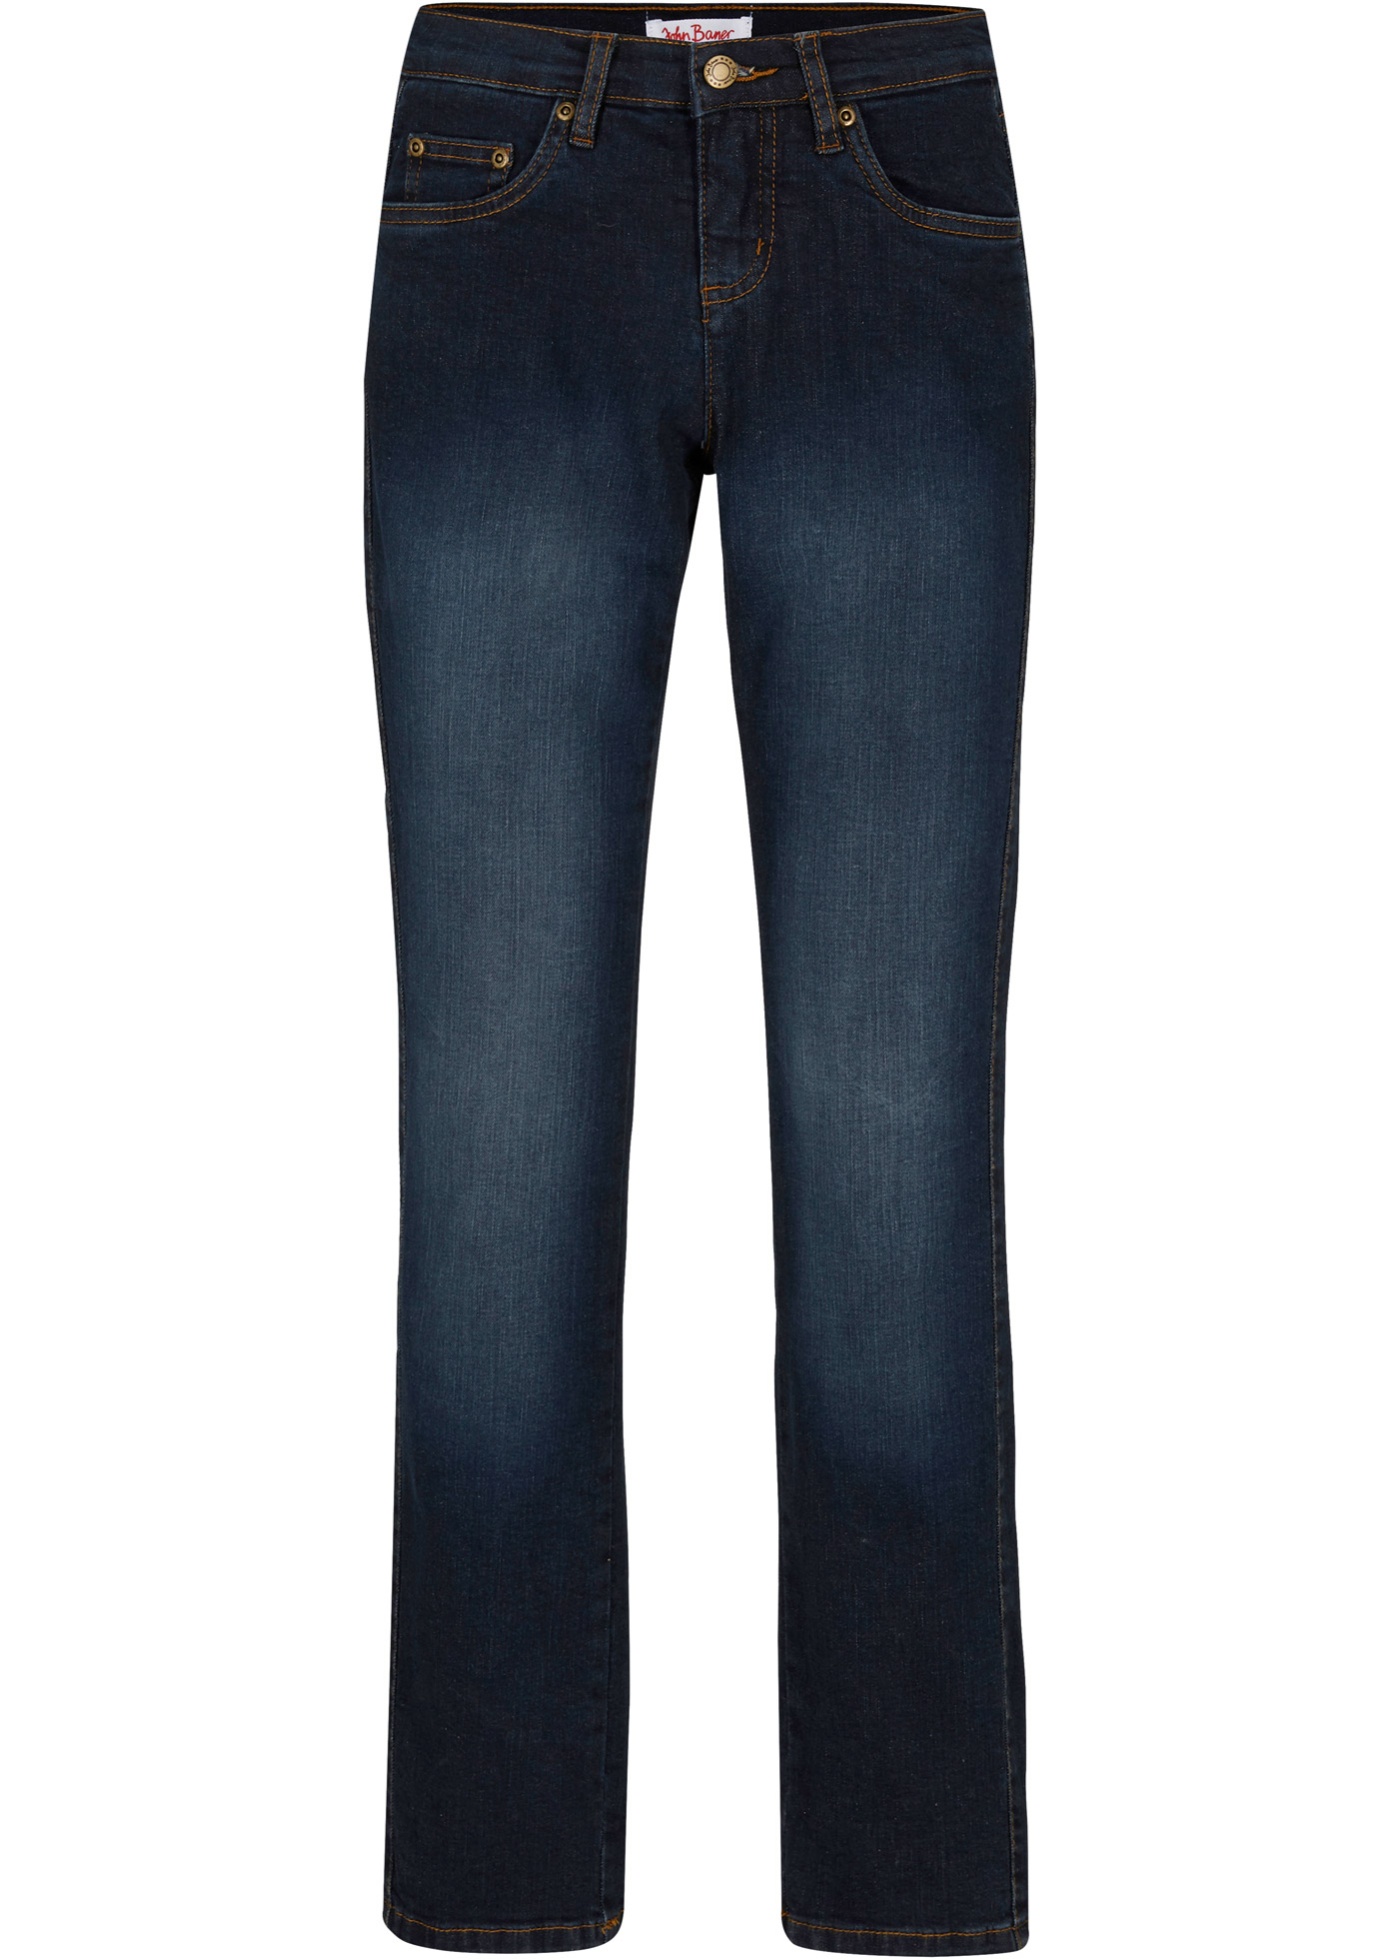 Figurbetonte Basic-Schlankmacher-Jeans (91782095) in dunkelblau used